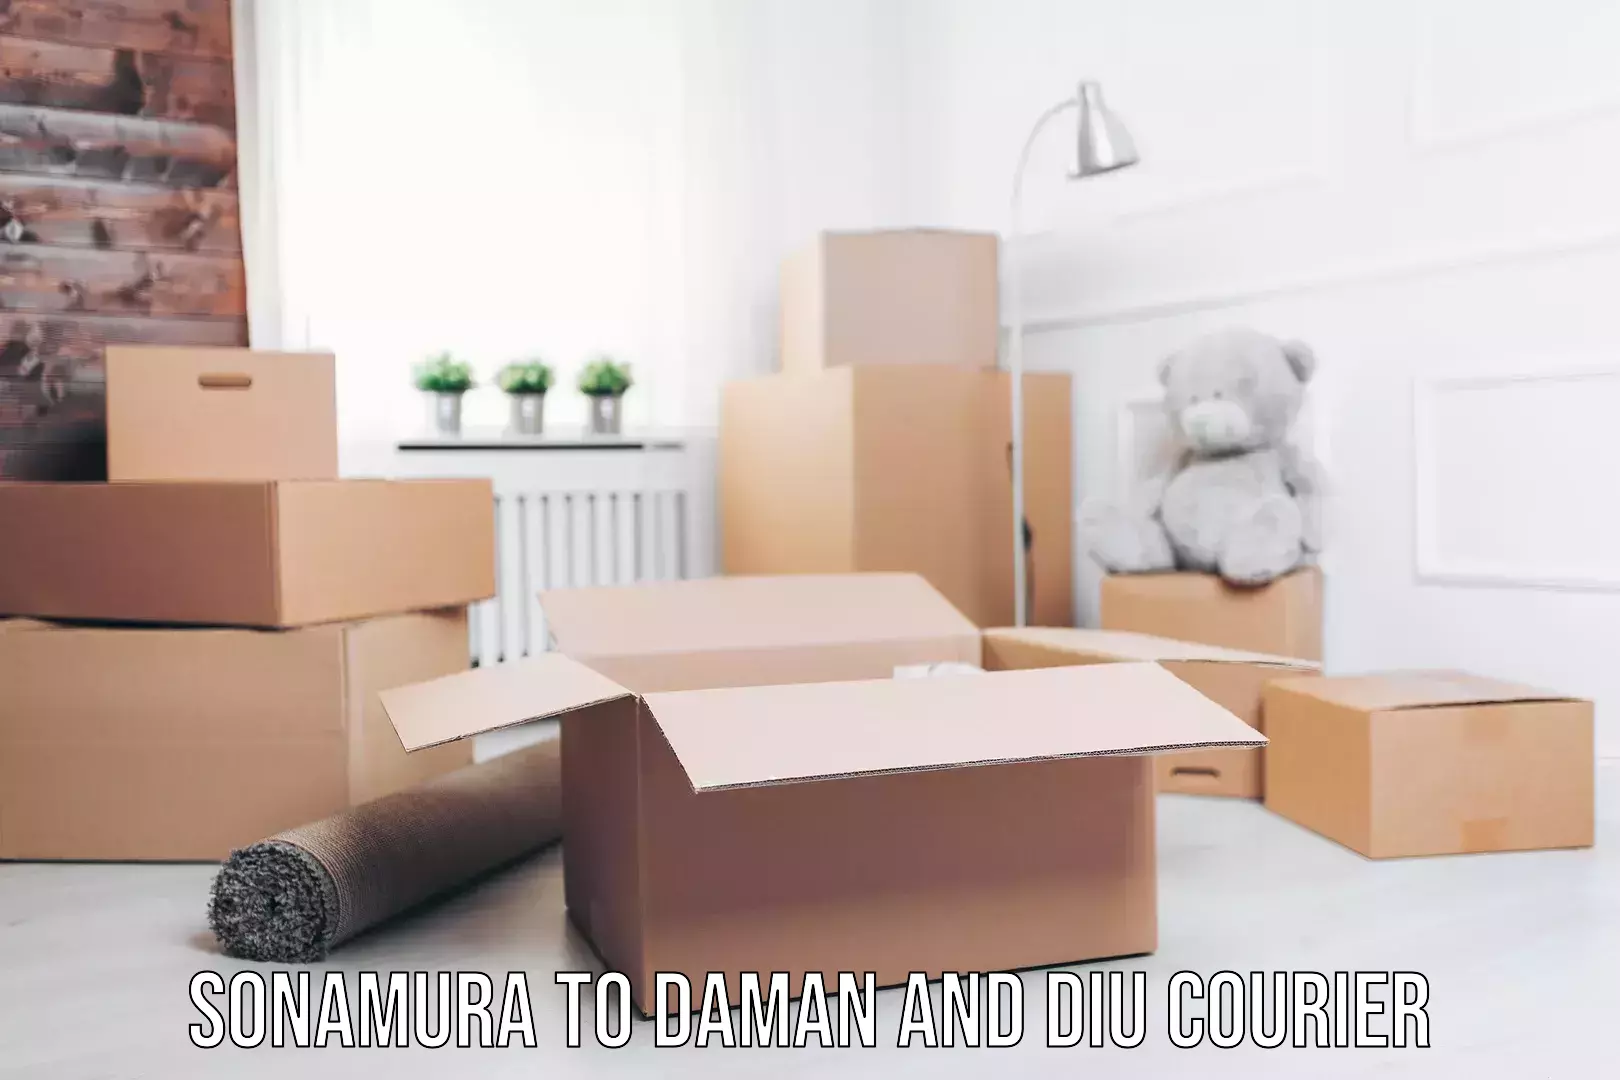 Easy return solutions Sonamura to Daman and Diu